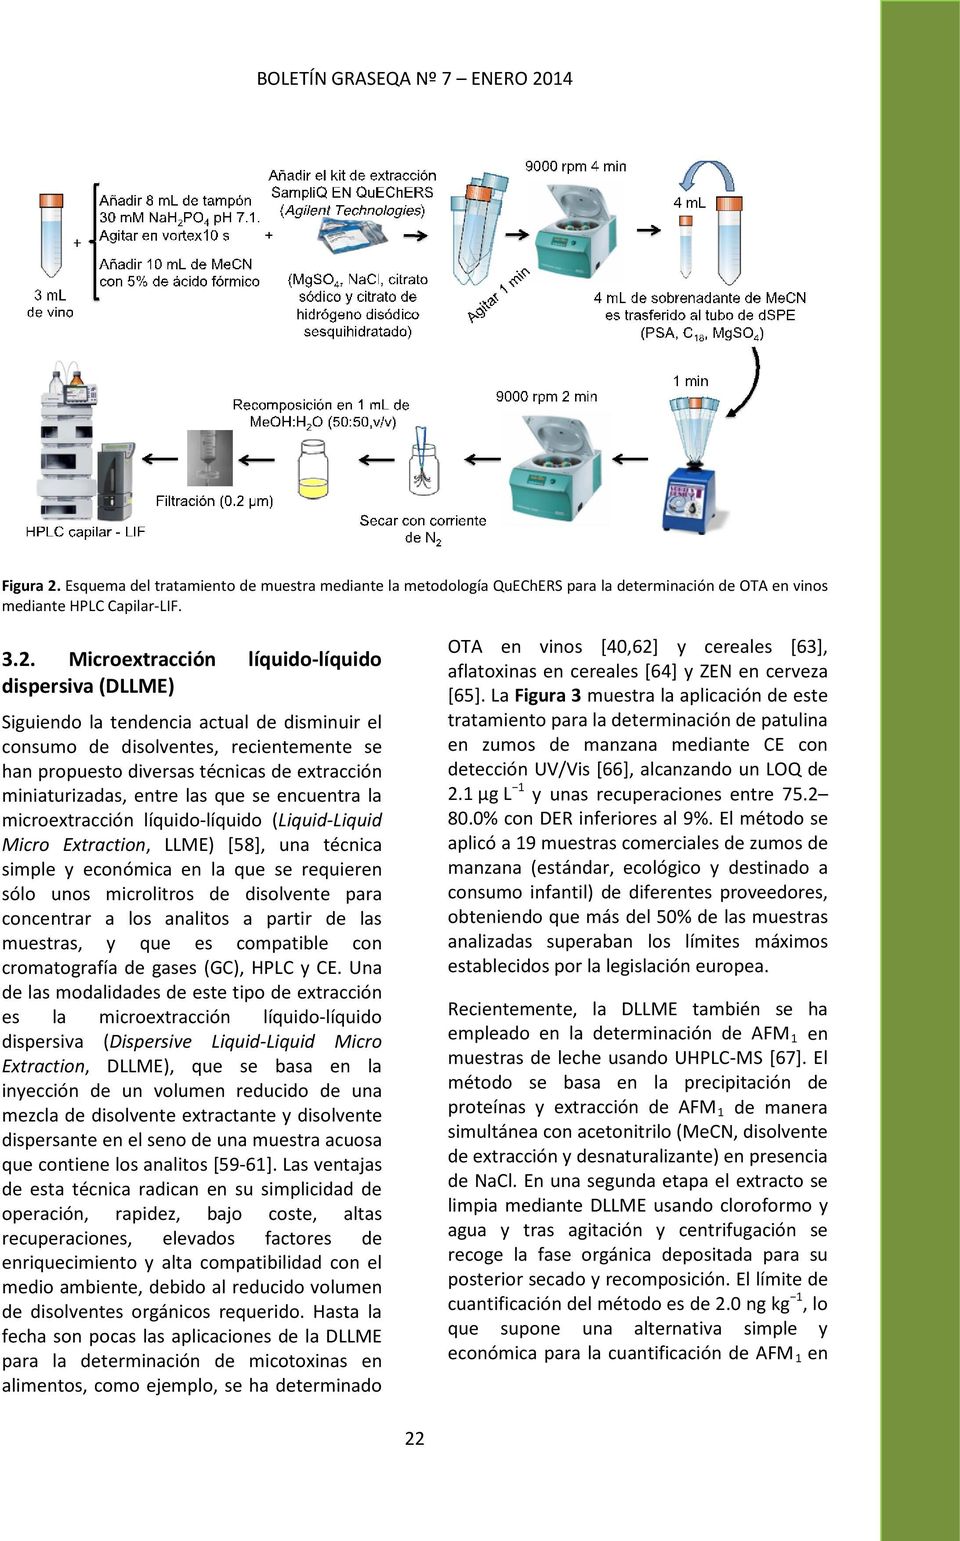 Esquema del tratamiento de muestra mediante la metodología QuEChERS para la determinación de OTA en vinos mediante HPLC Capilar-LIF. 3.2.